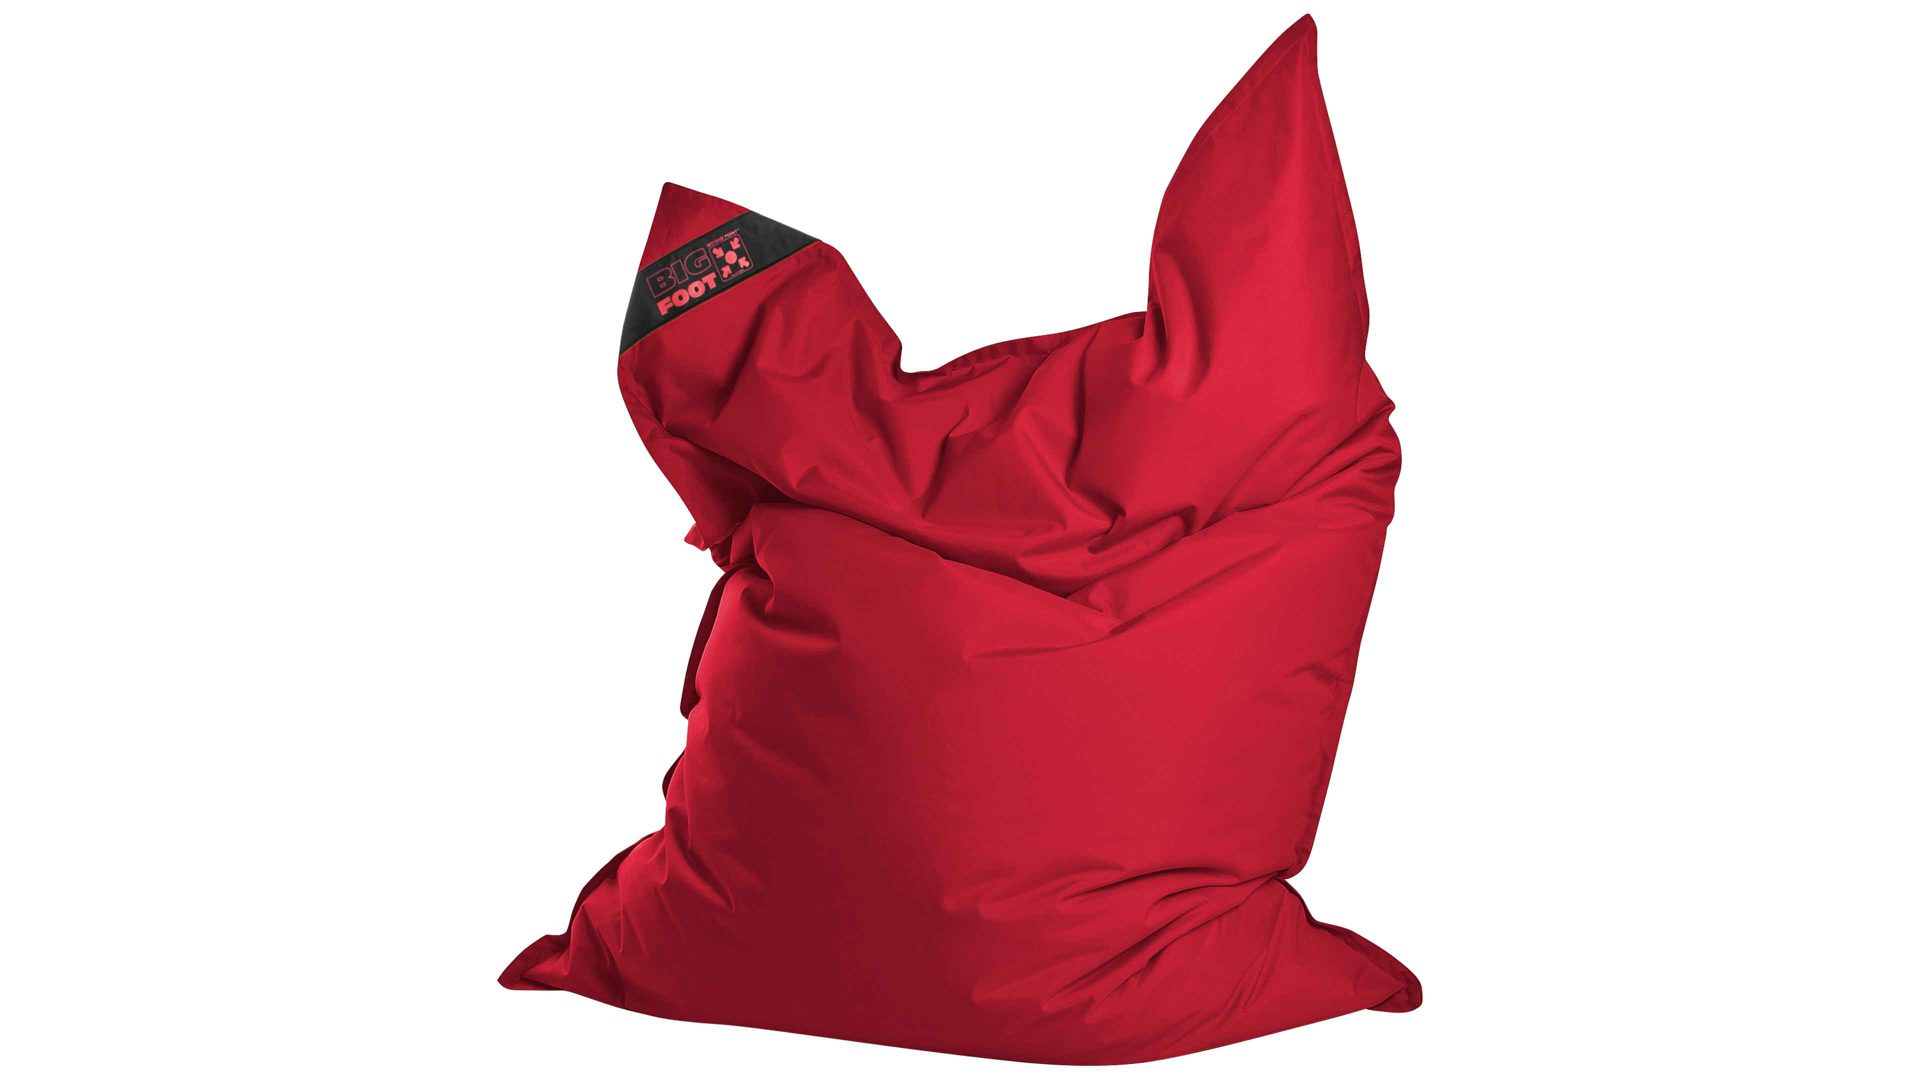 Sitzsack-Bodenkissen Magma sitting point aus Kunstfaser in Rot SITTING POINT Sitzsack bigfoot scuba® - Sitzmöbel rote Kunstfaser - ca. 130 x 170 cm